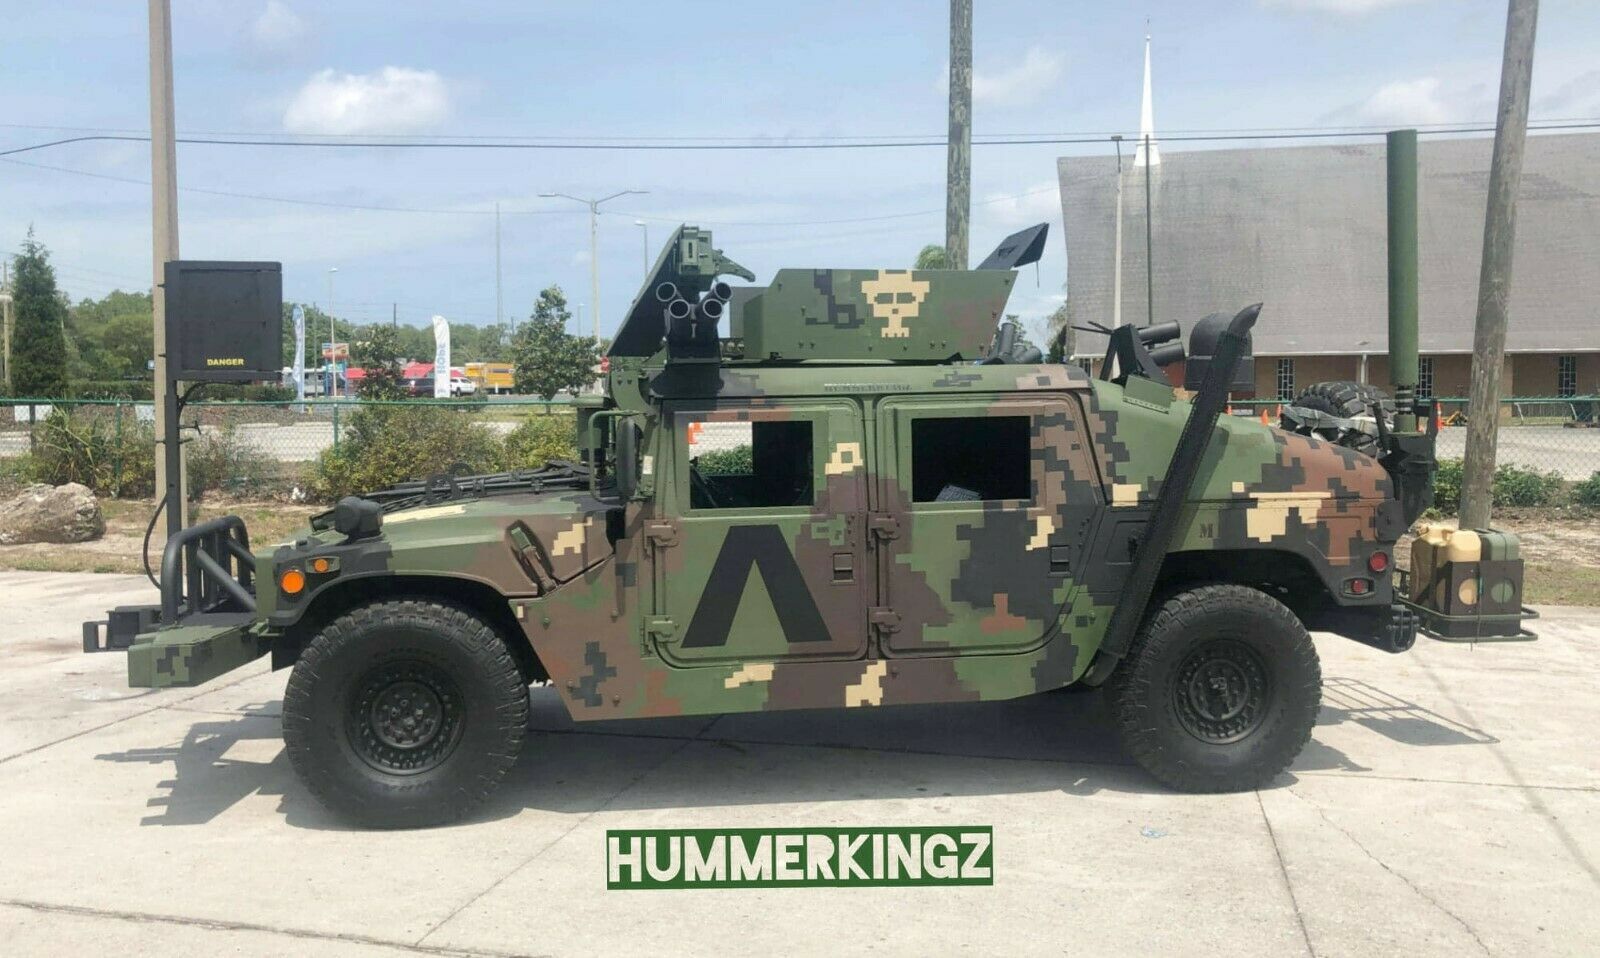 Військові Humvee виставили на продаж